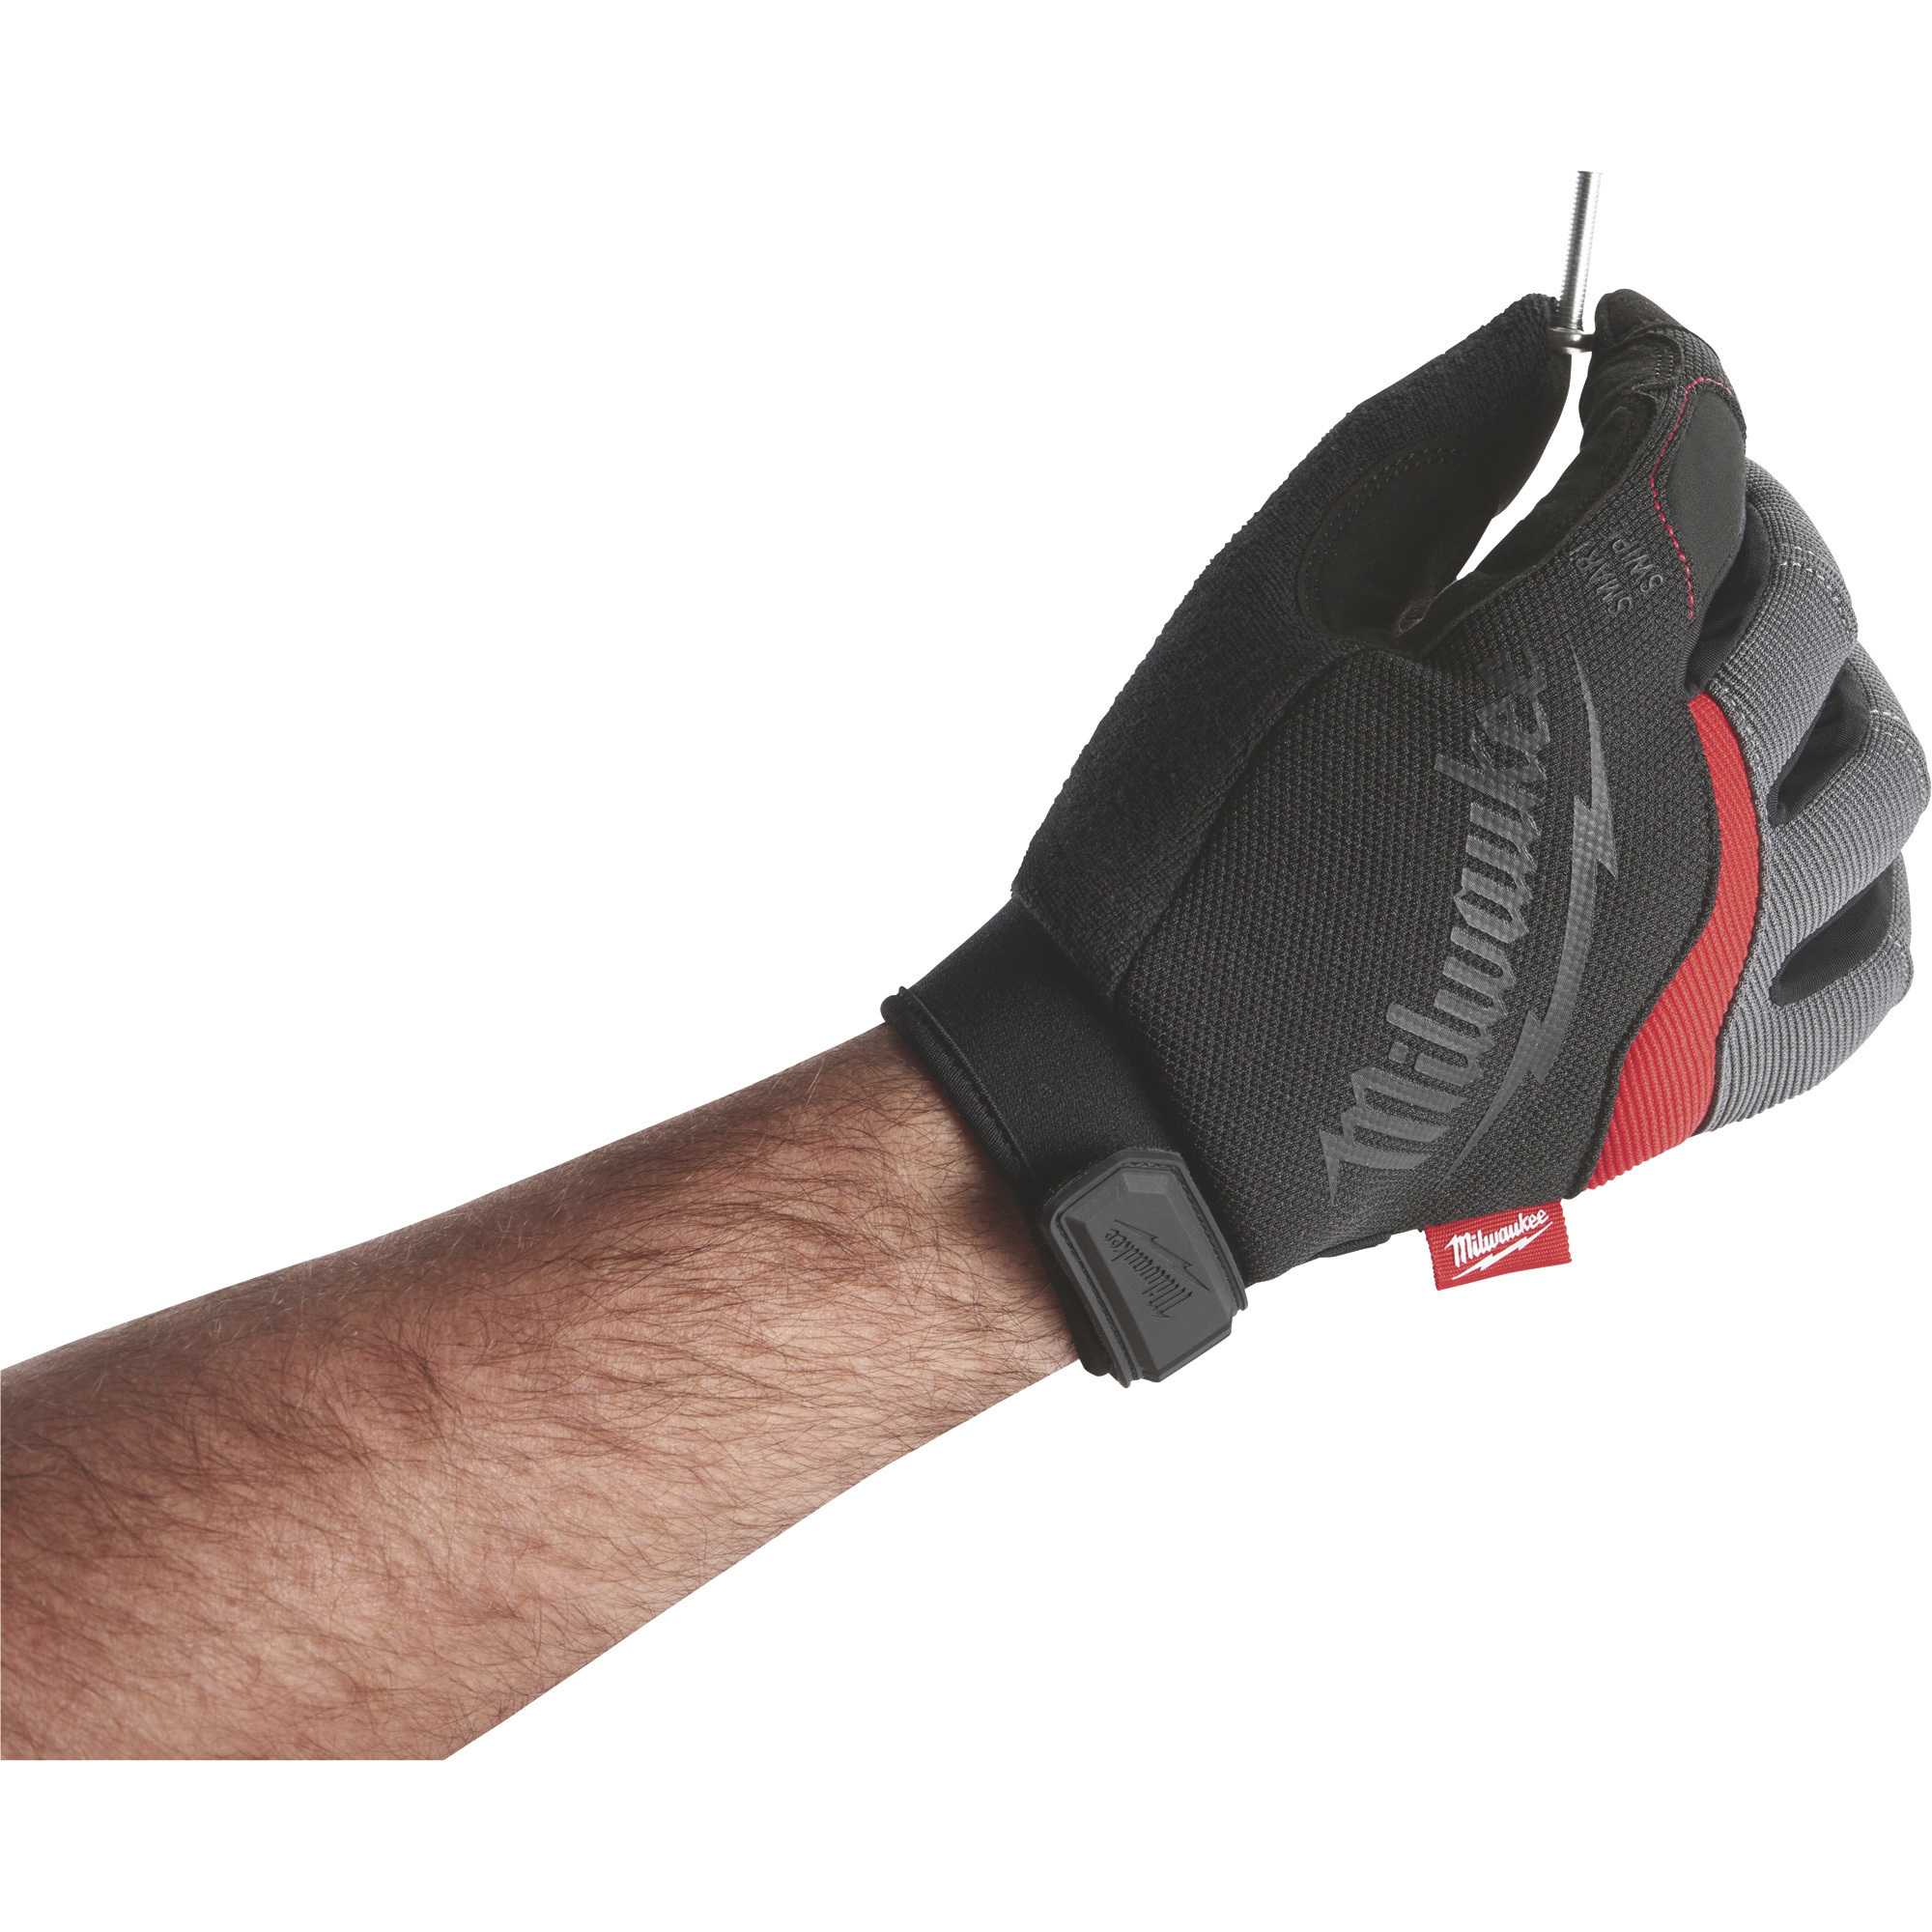 Milwaukee Work Gloves 48-22-8723, Size XL, Red, Black, Gray